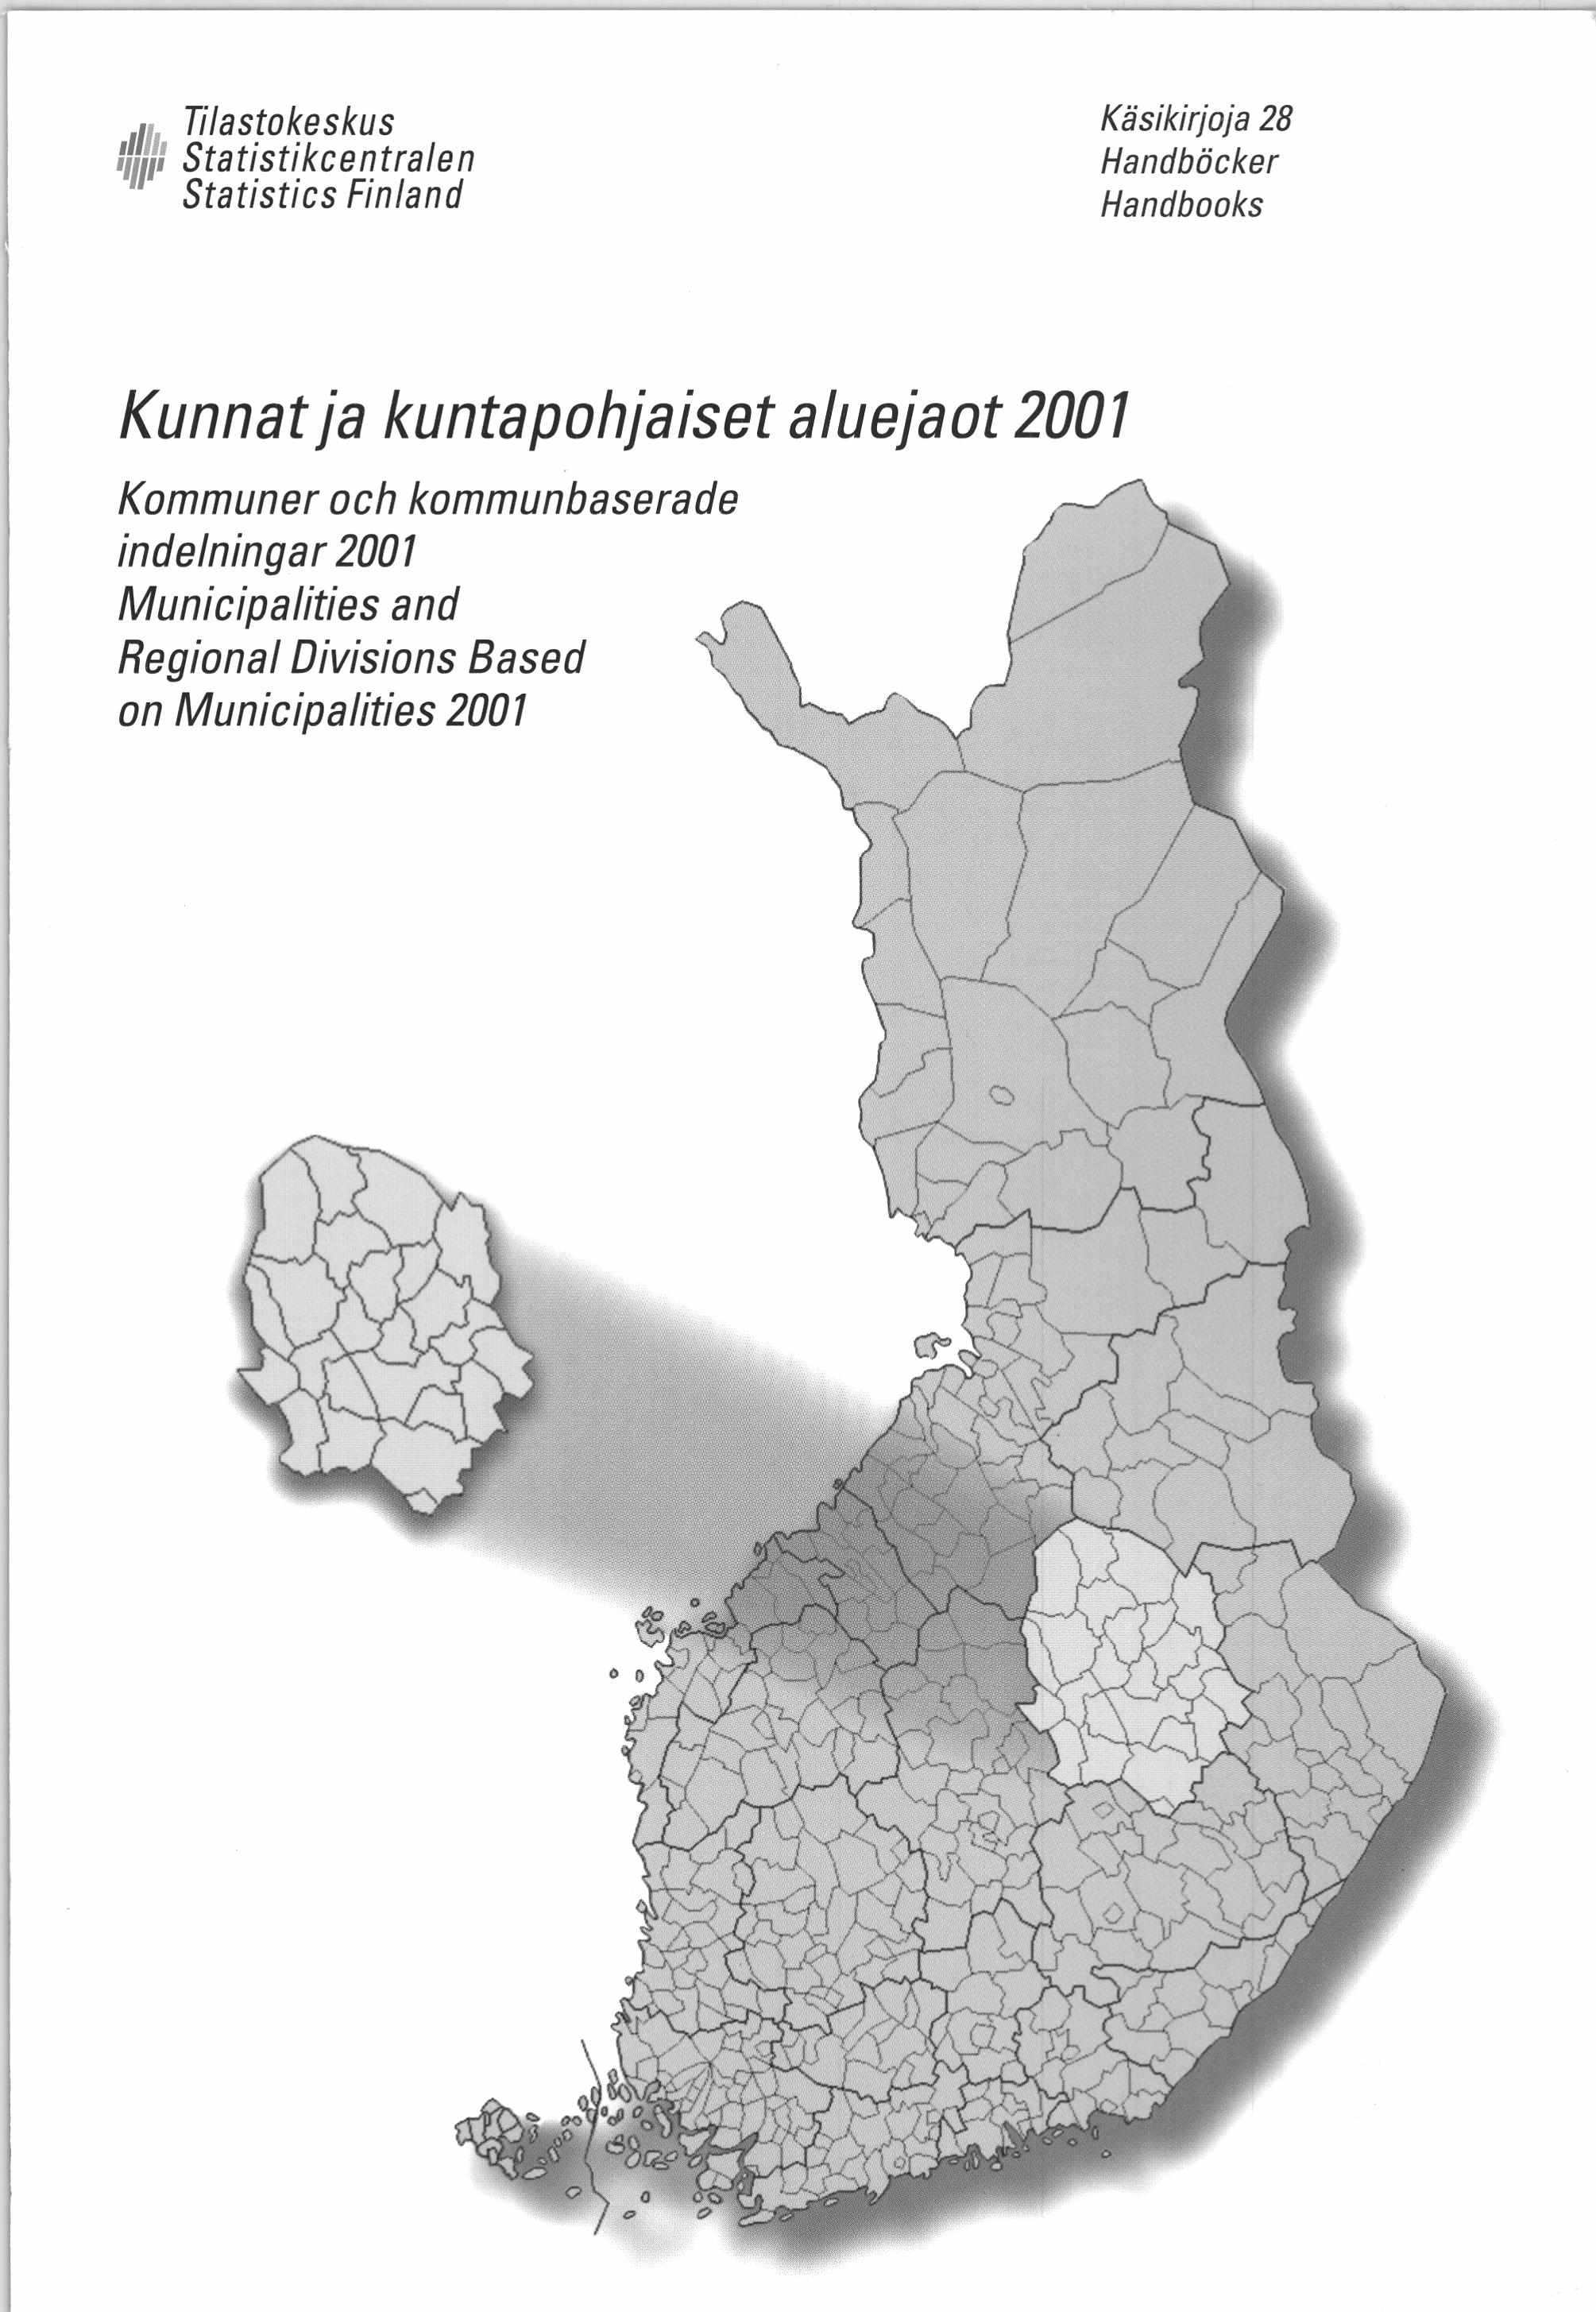 Tilastokeskus Statistikcentralen Statistics Finland Käsikirjoja 28 Handböcker Handbooks Kunnat ja kuntapohjaiset